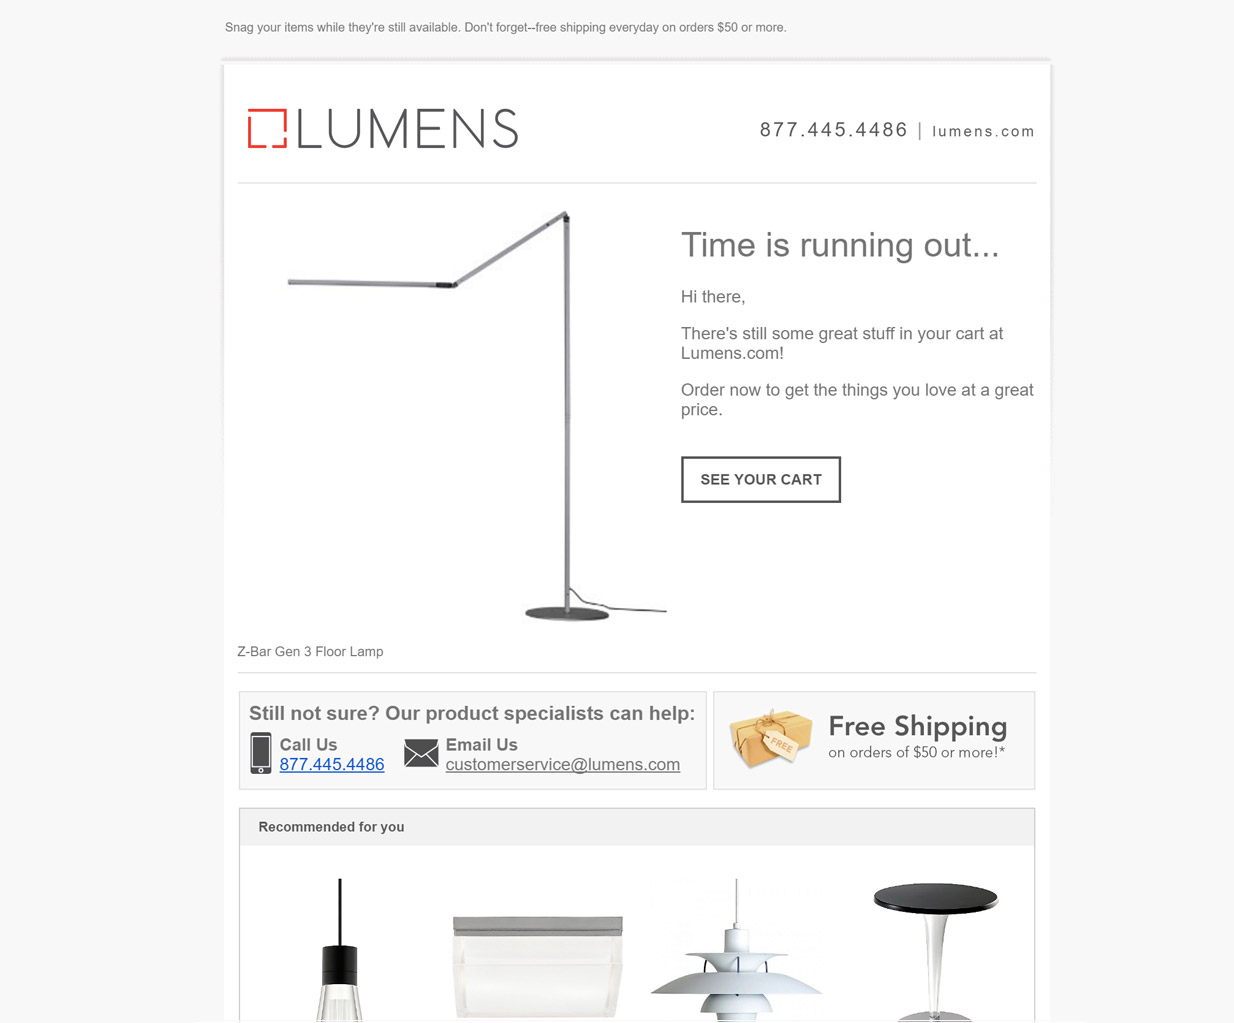 Lumens Remarketing Email